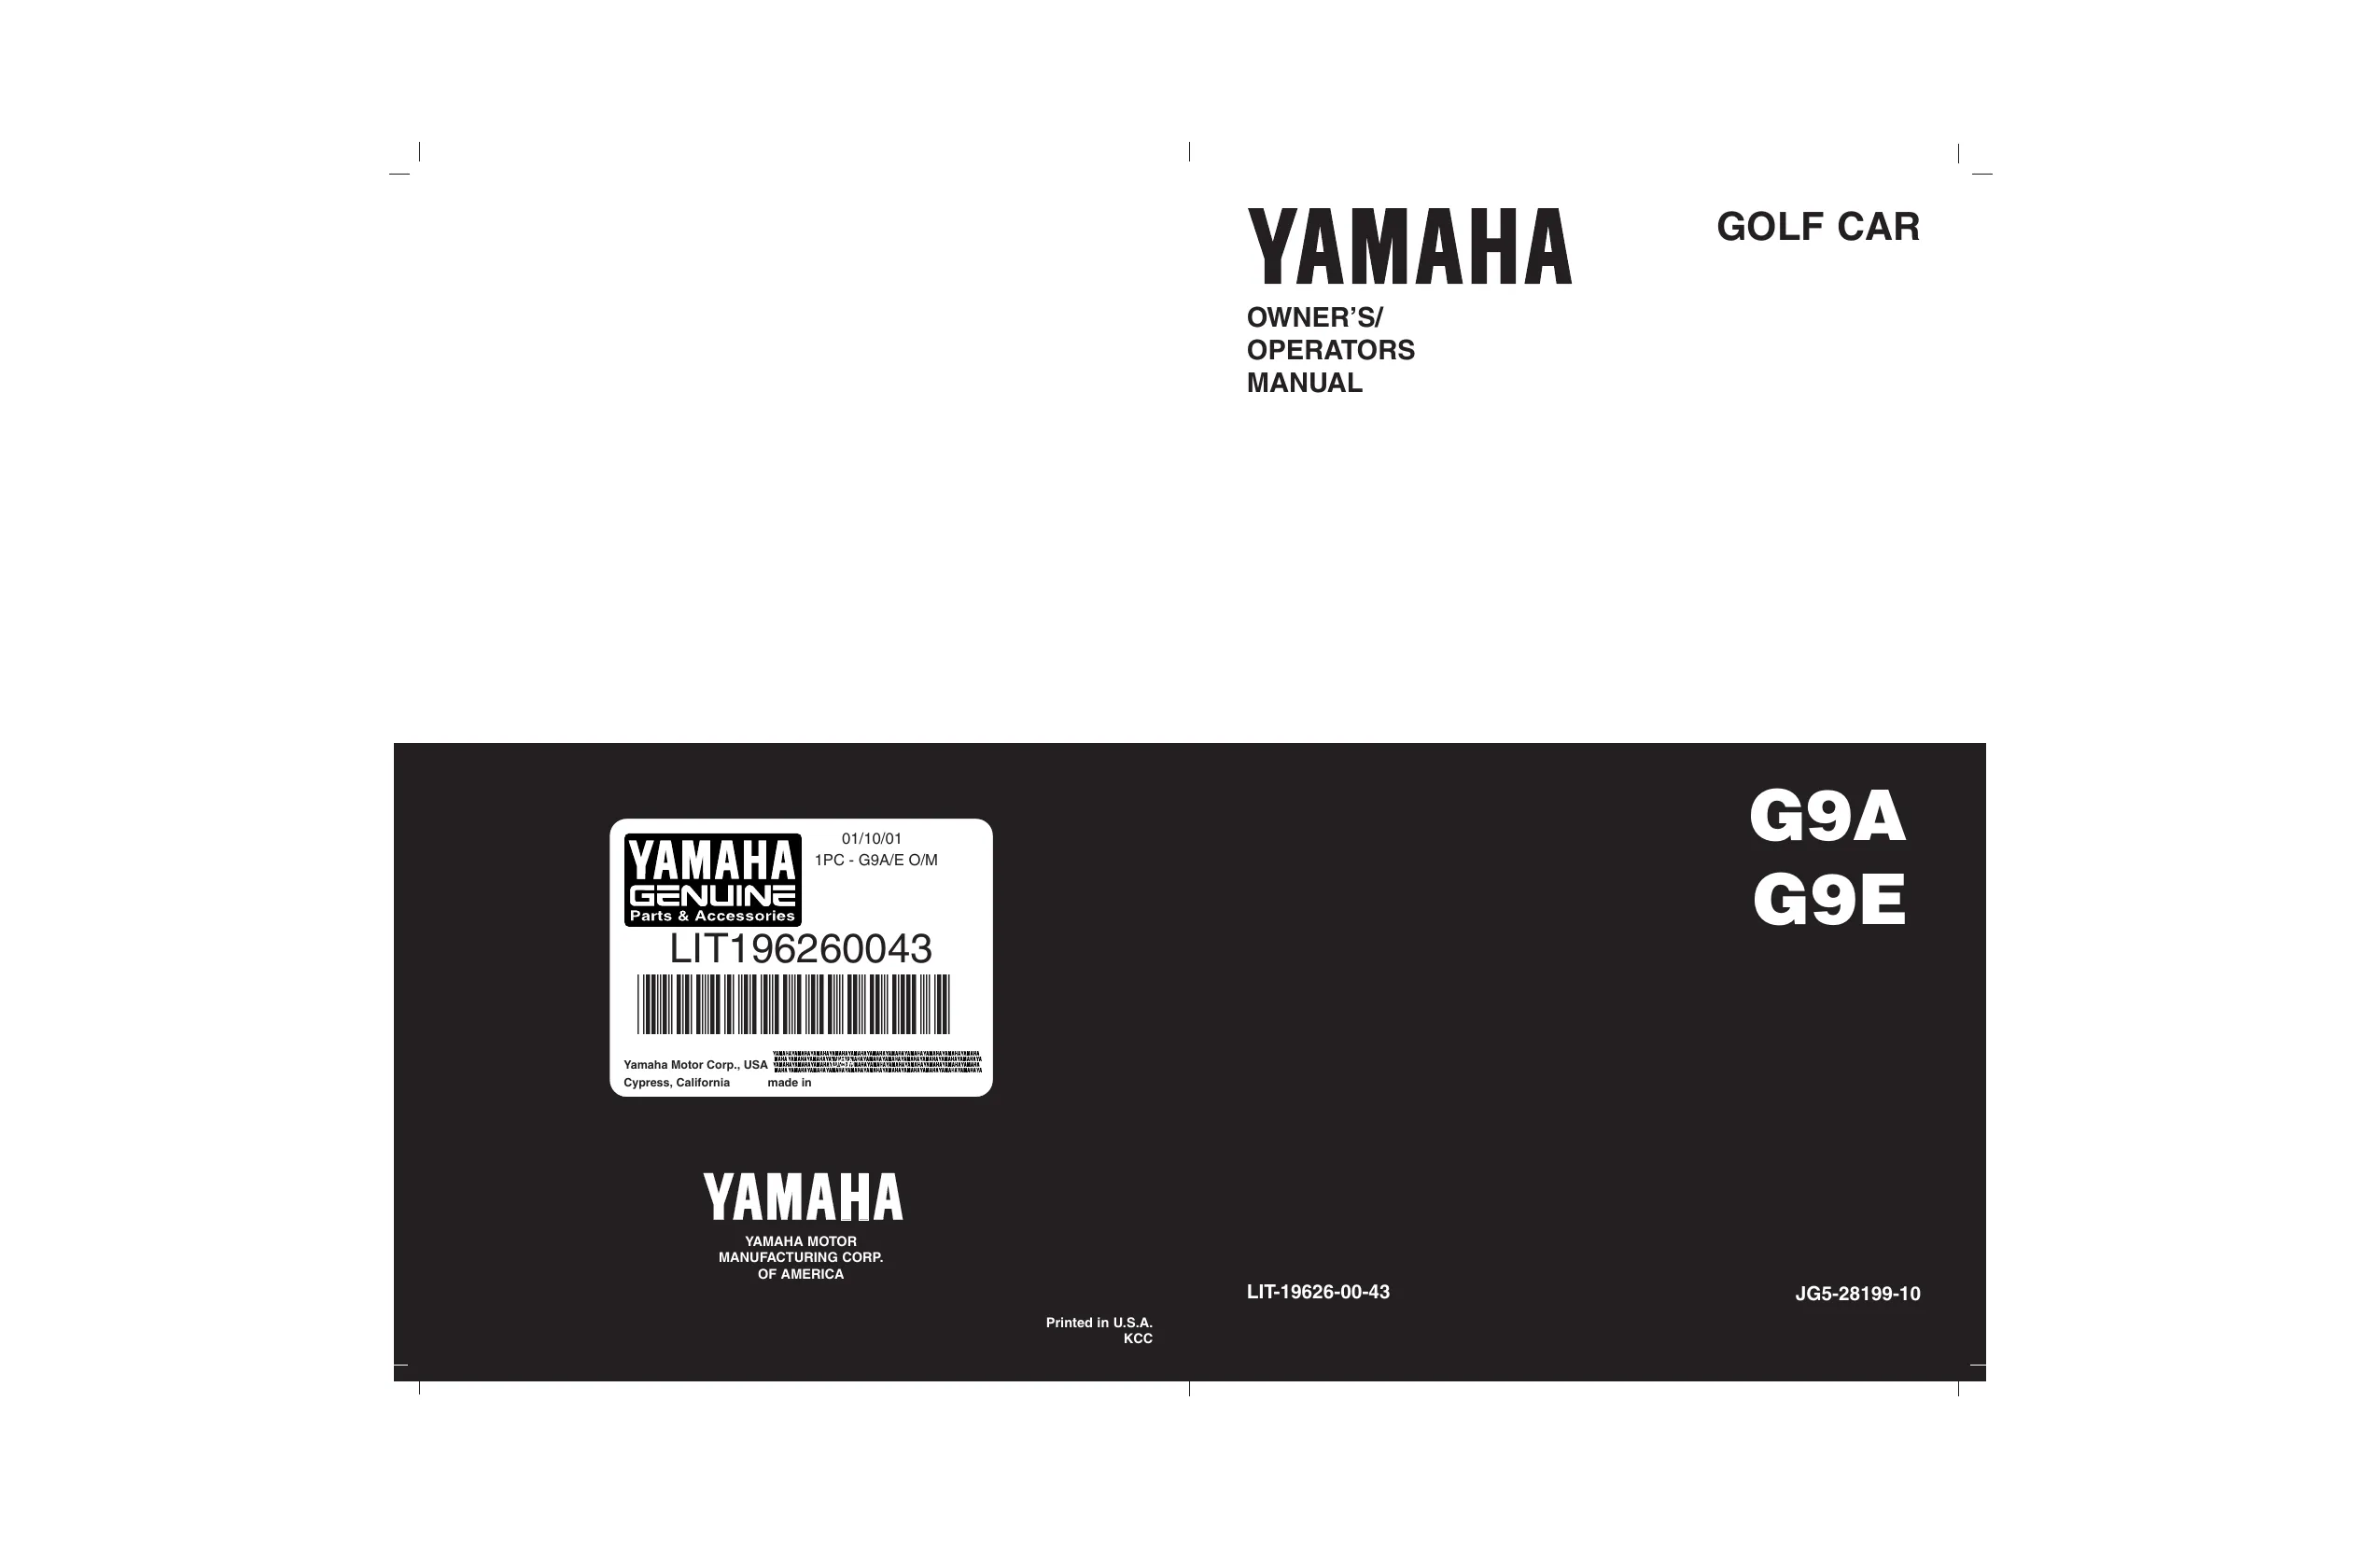 Yamaha Golf Cart G2-G9, G2-A/E. G9-AJ/EJ, G9-AG/AH, G9-EG/EH1, G9-EH2 repair manual Preview image 1